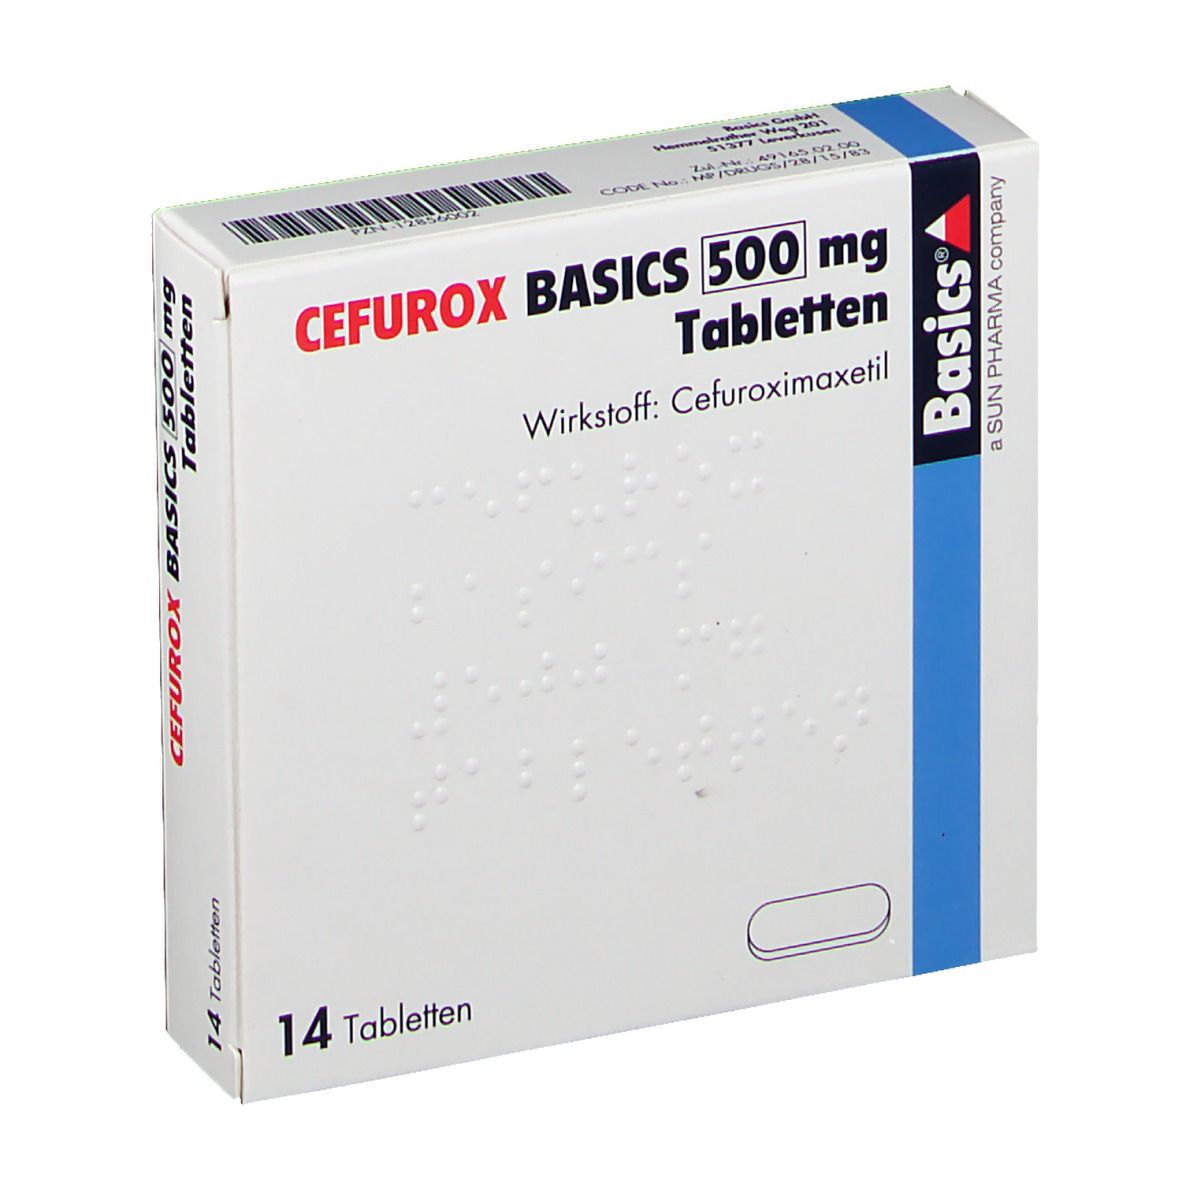 Basics 500 milchprodukte cefurox und CEFUROX BASICS